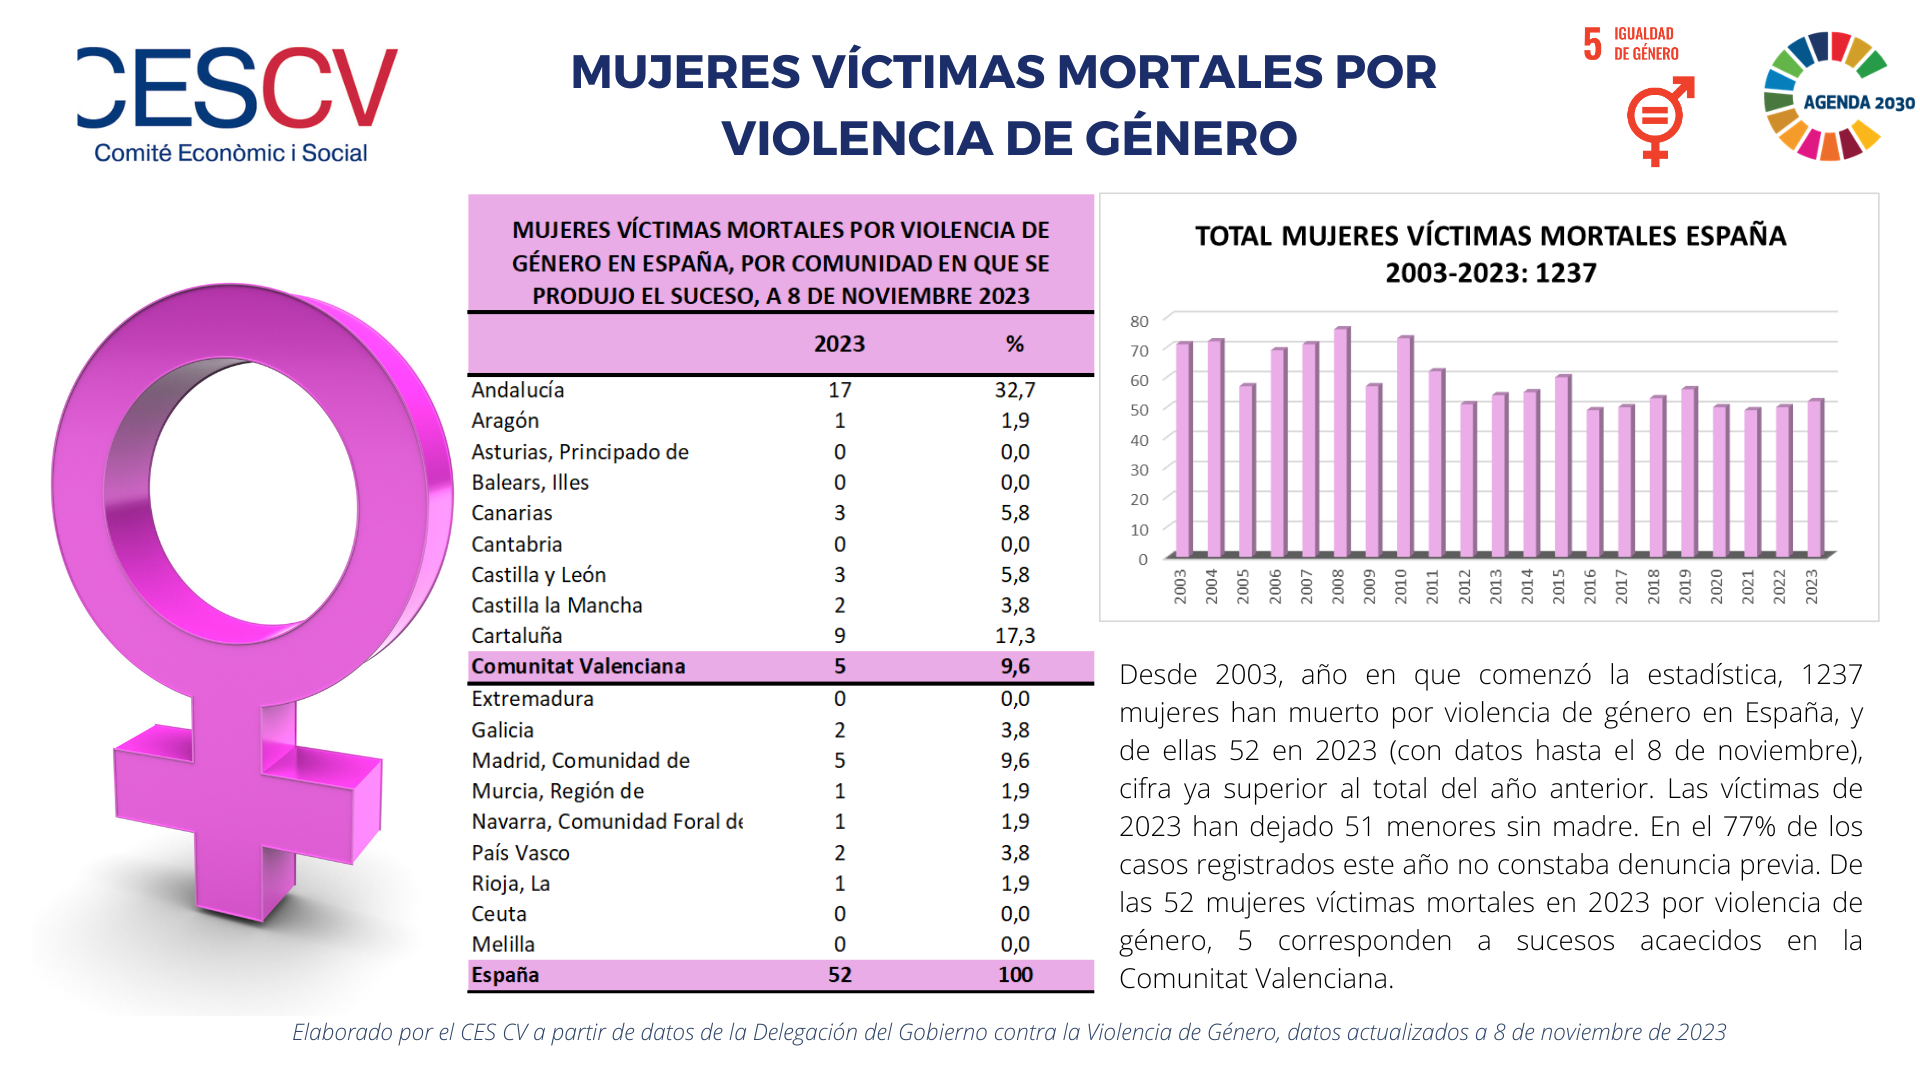 MUJERES VÍCTIMAS MORTALES POR VIOLENCIA DE GÉNERO